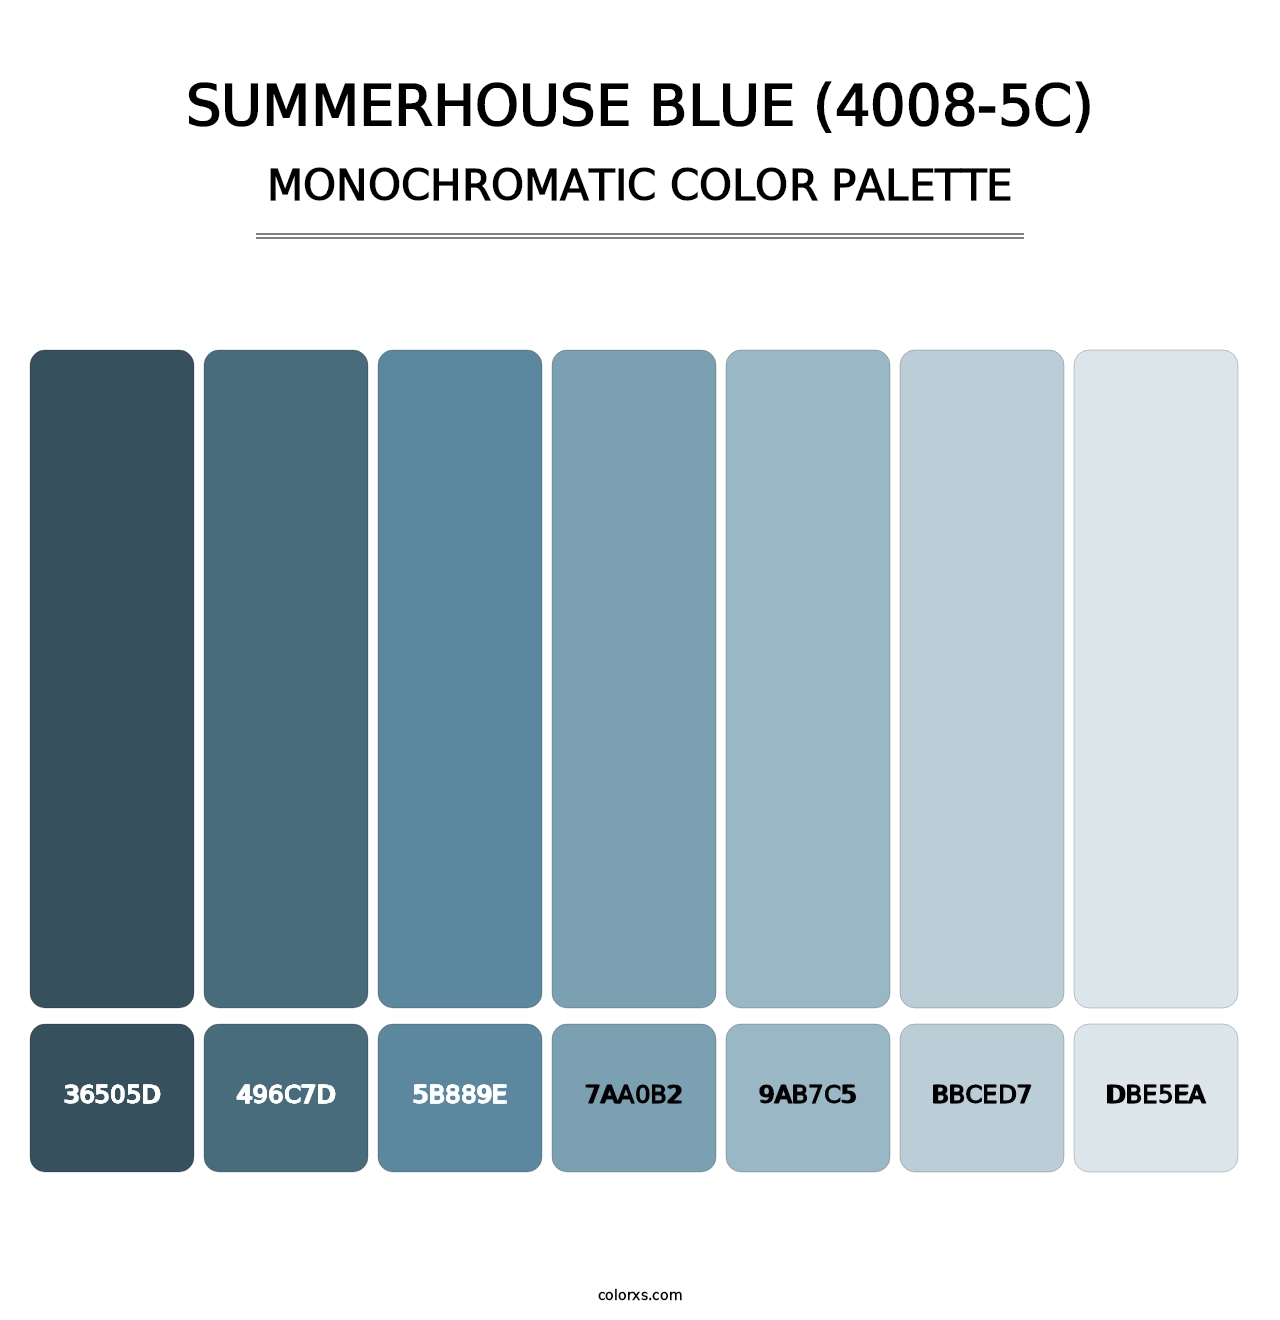 Summerhouse Blue (4008-5C) - Monochromatic Color Palette